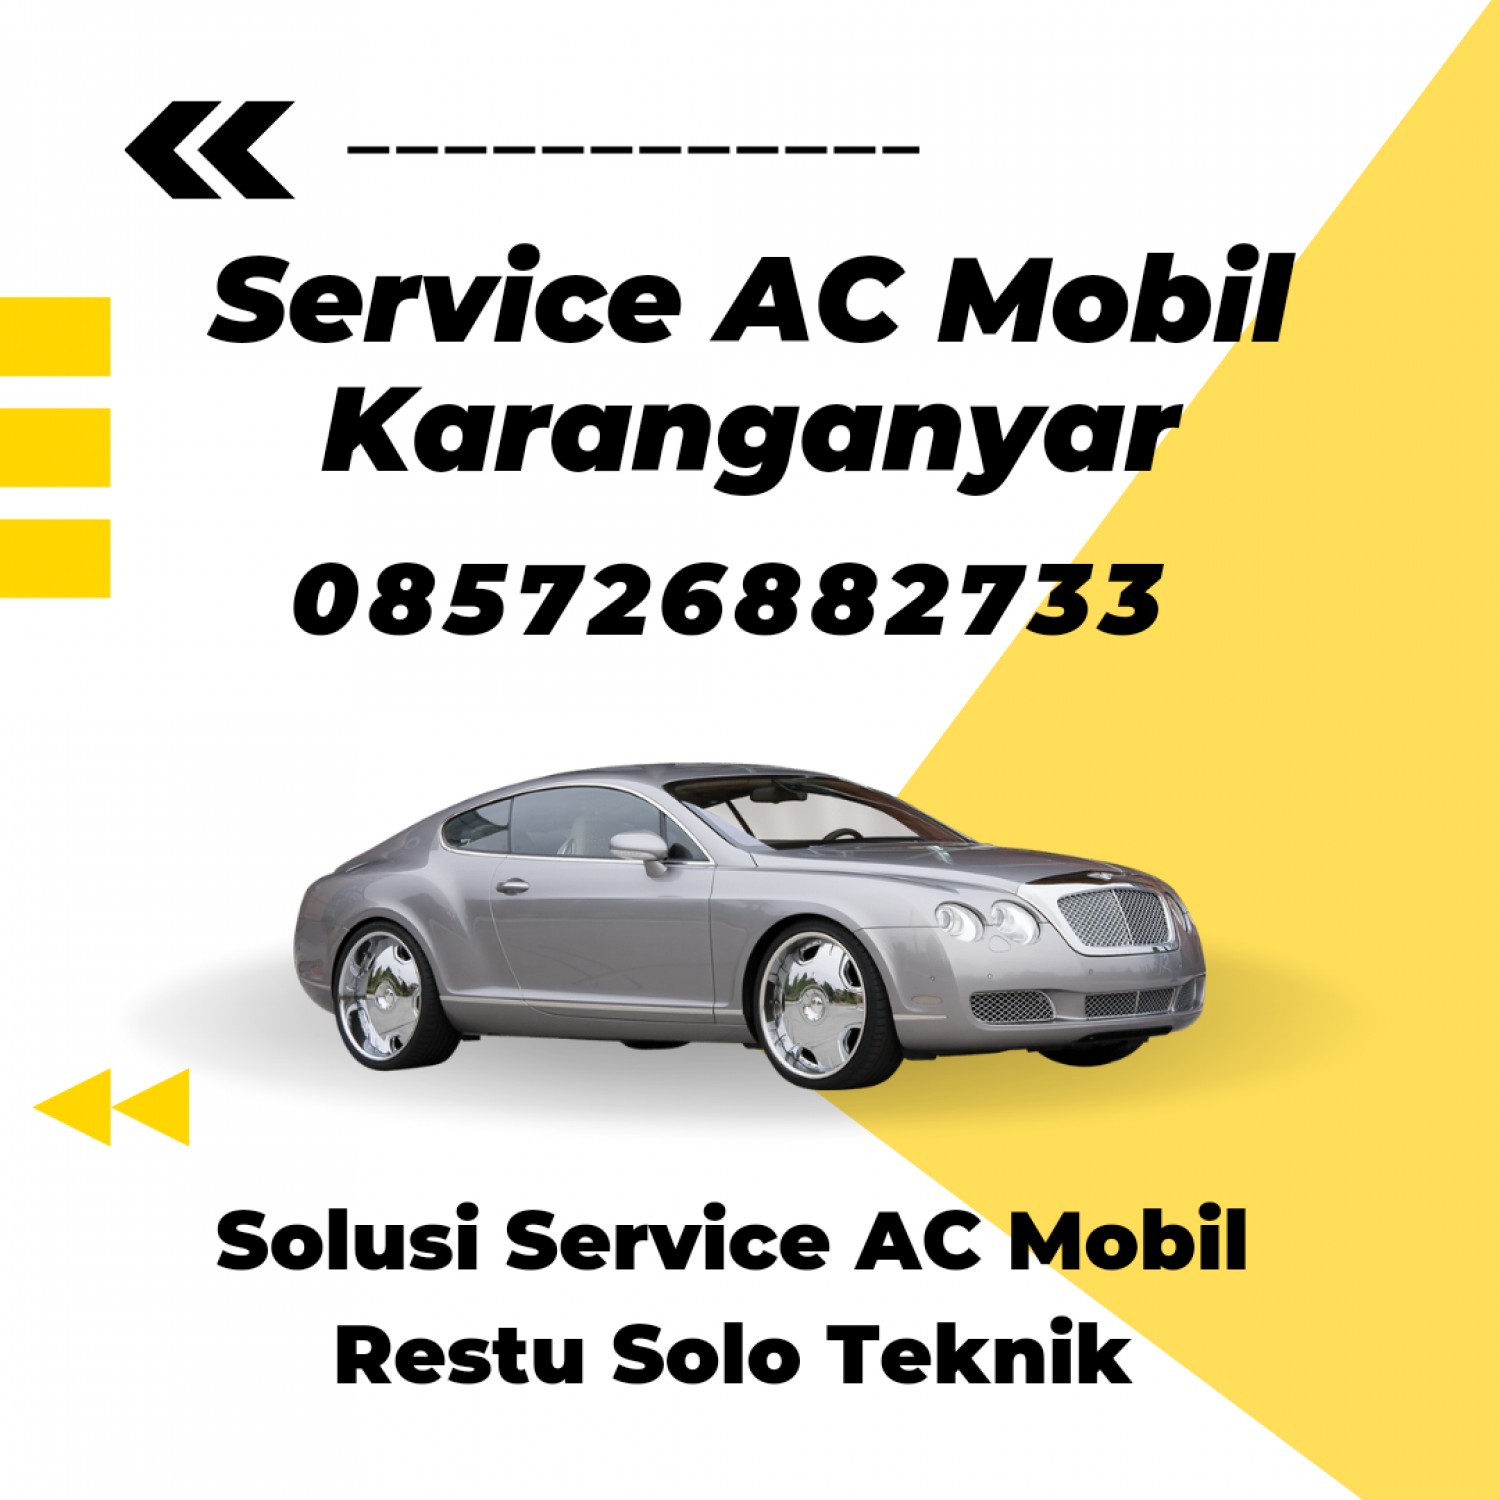 Service AC Mobil Karanganyar 085726882733